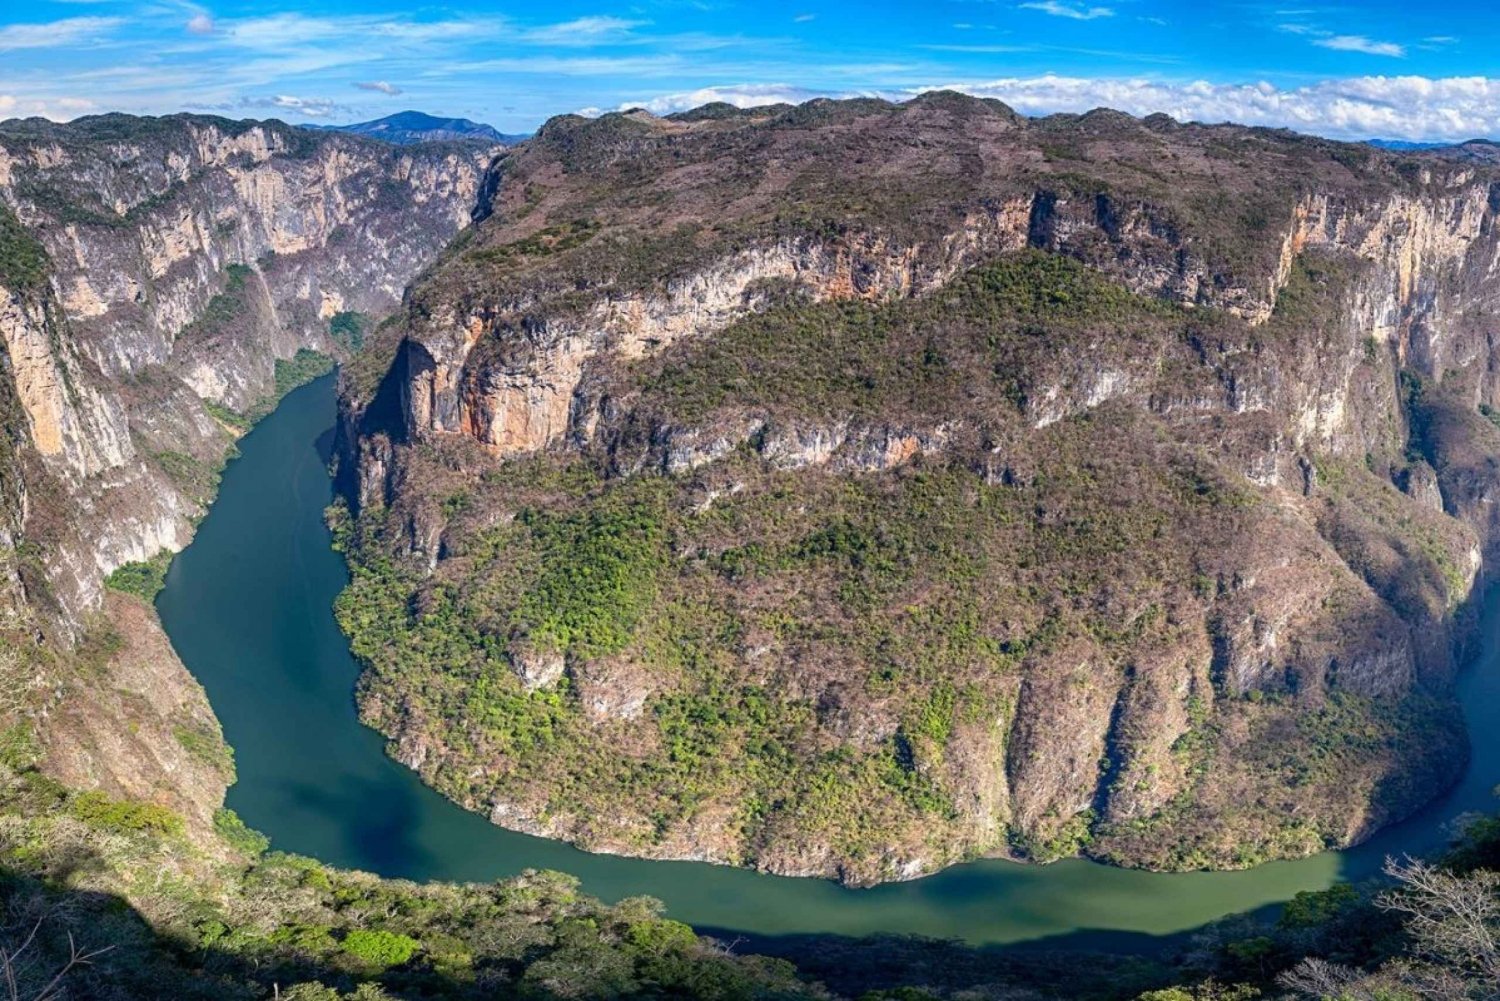 San Cristóbal: Sumidero Canyon, Viewpoints & Chiapa de Corzo